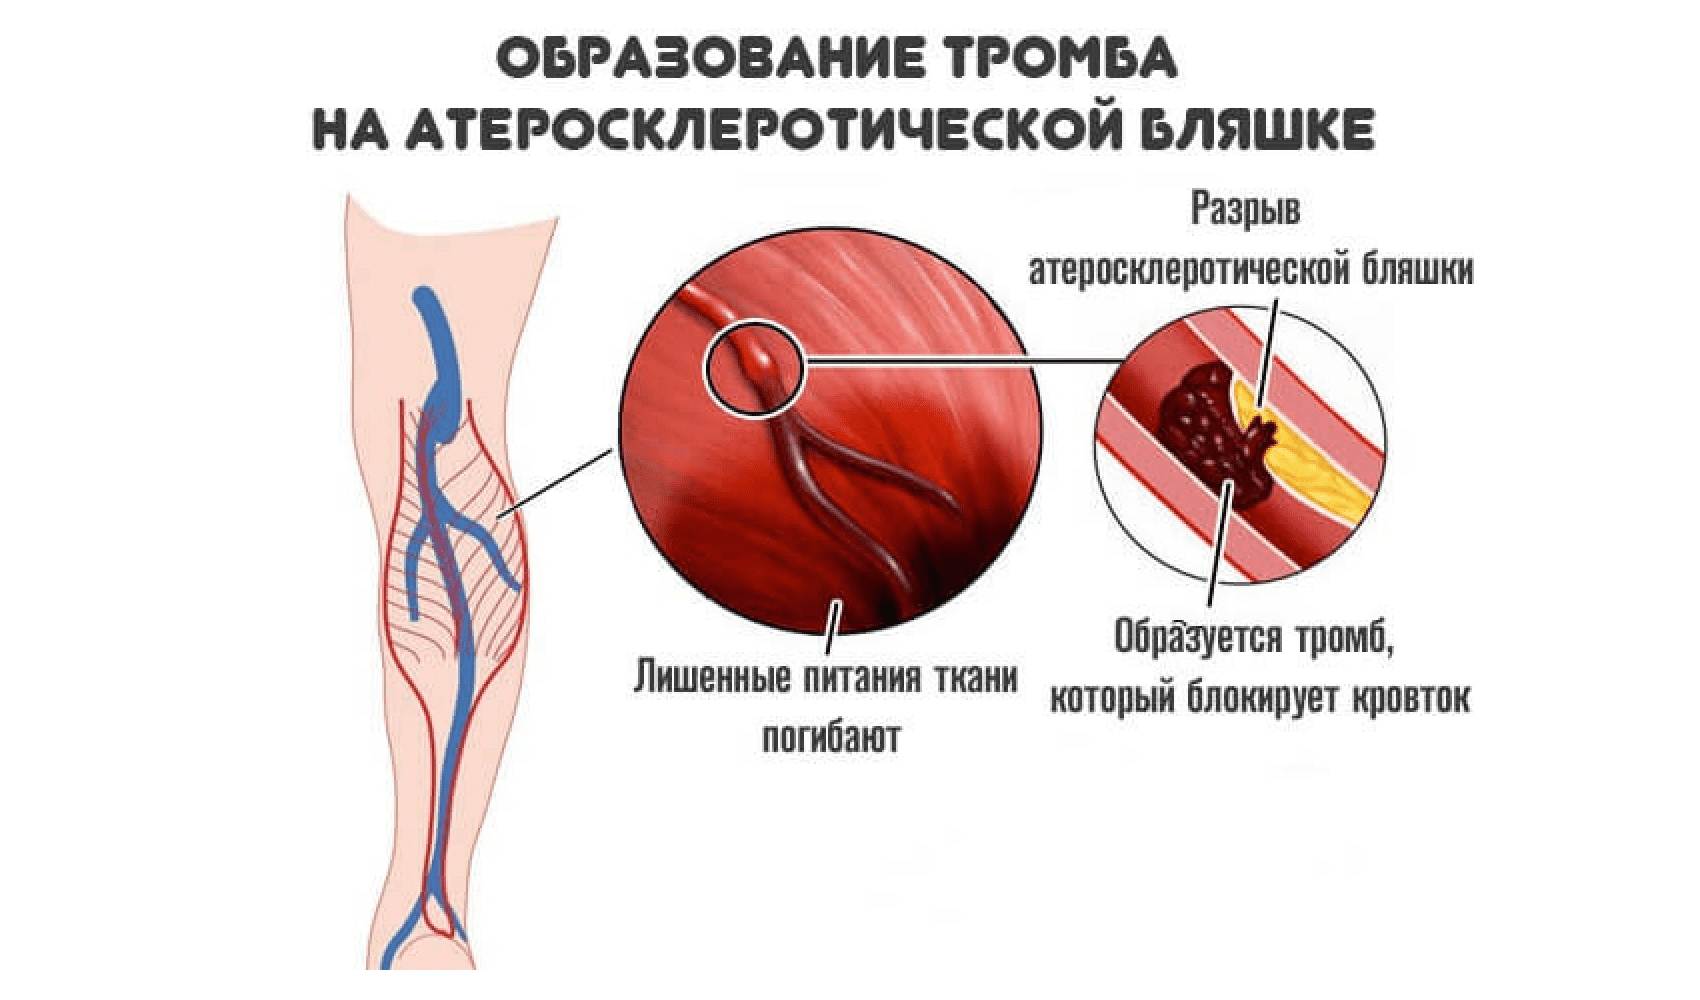 Размеры тромбов. Образование тромбов в артериях. Атеросклеротическая бляшка и тромб.